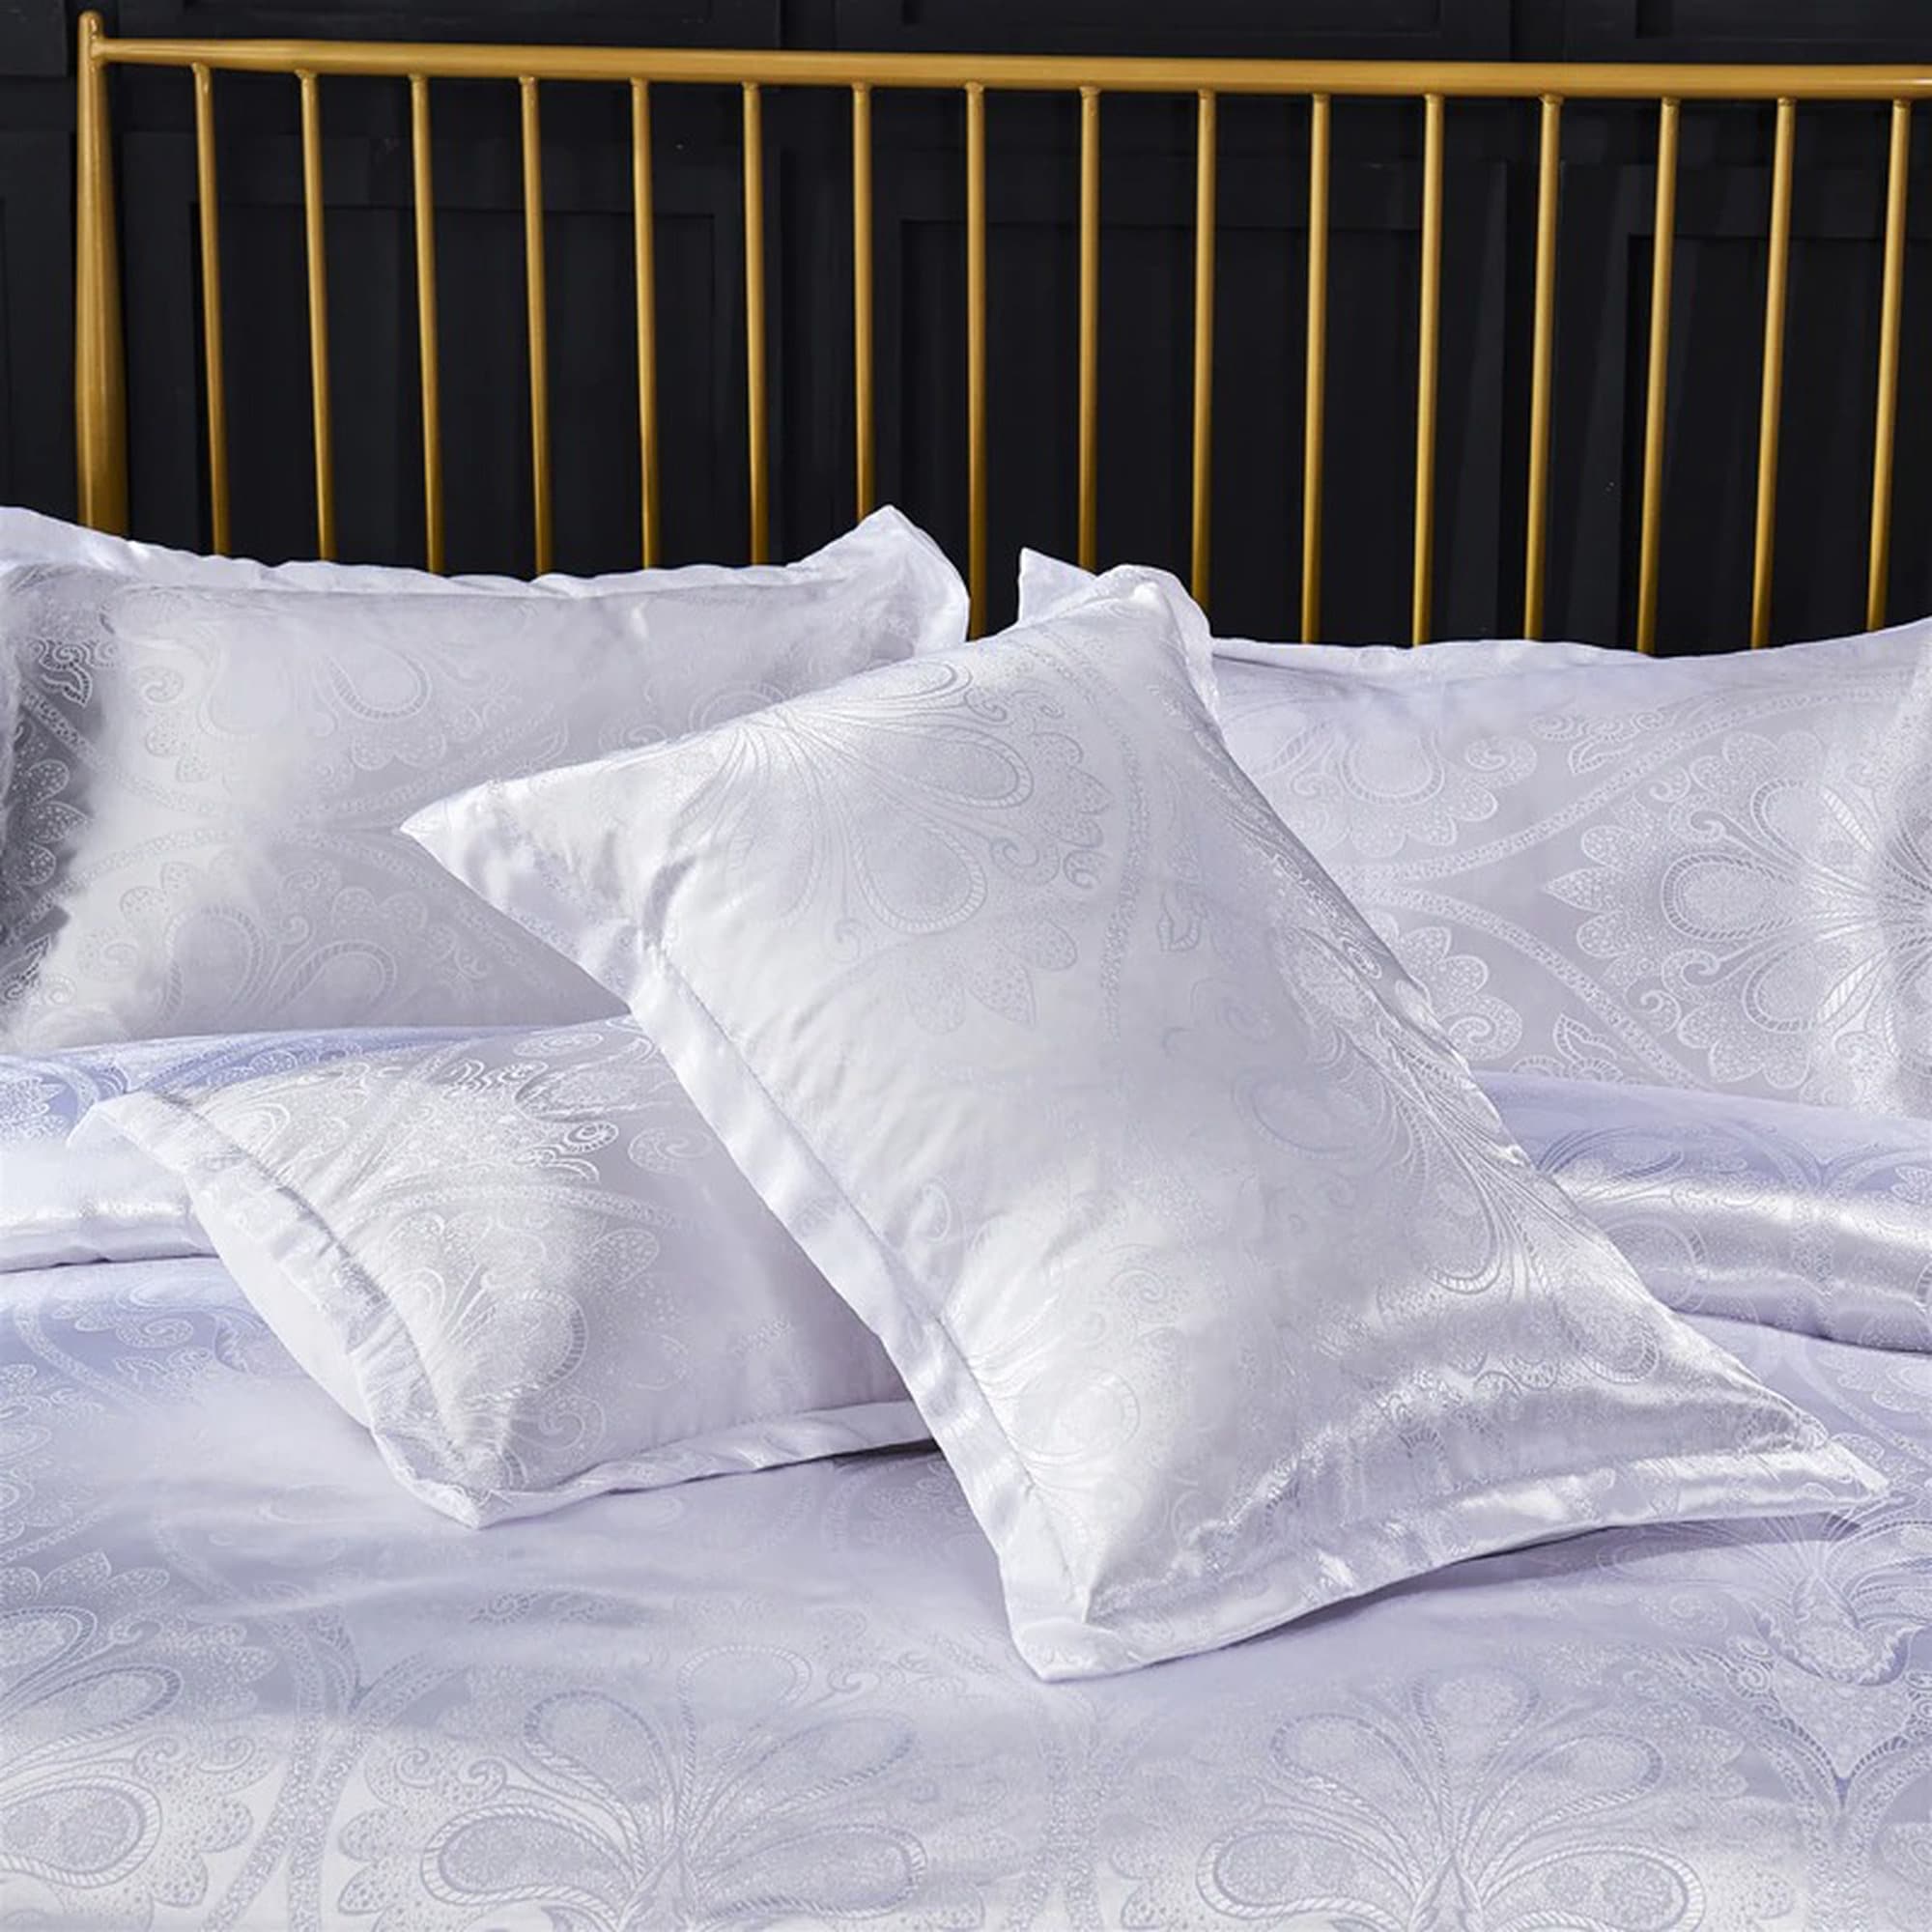 daintyduvet Luxury White Bedding made with Silky Jacquard Fabric, Damask Duvet Cover Set, Designer Bedding, Aesthetic Duvet King Queen Full Twin